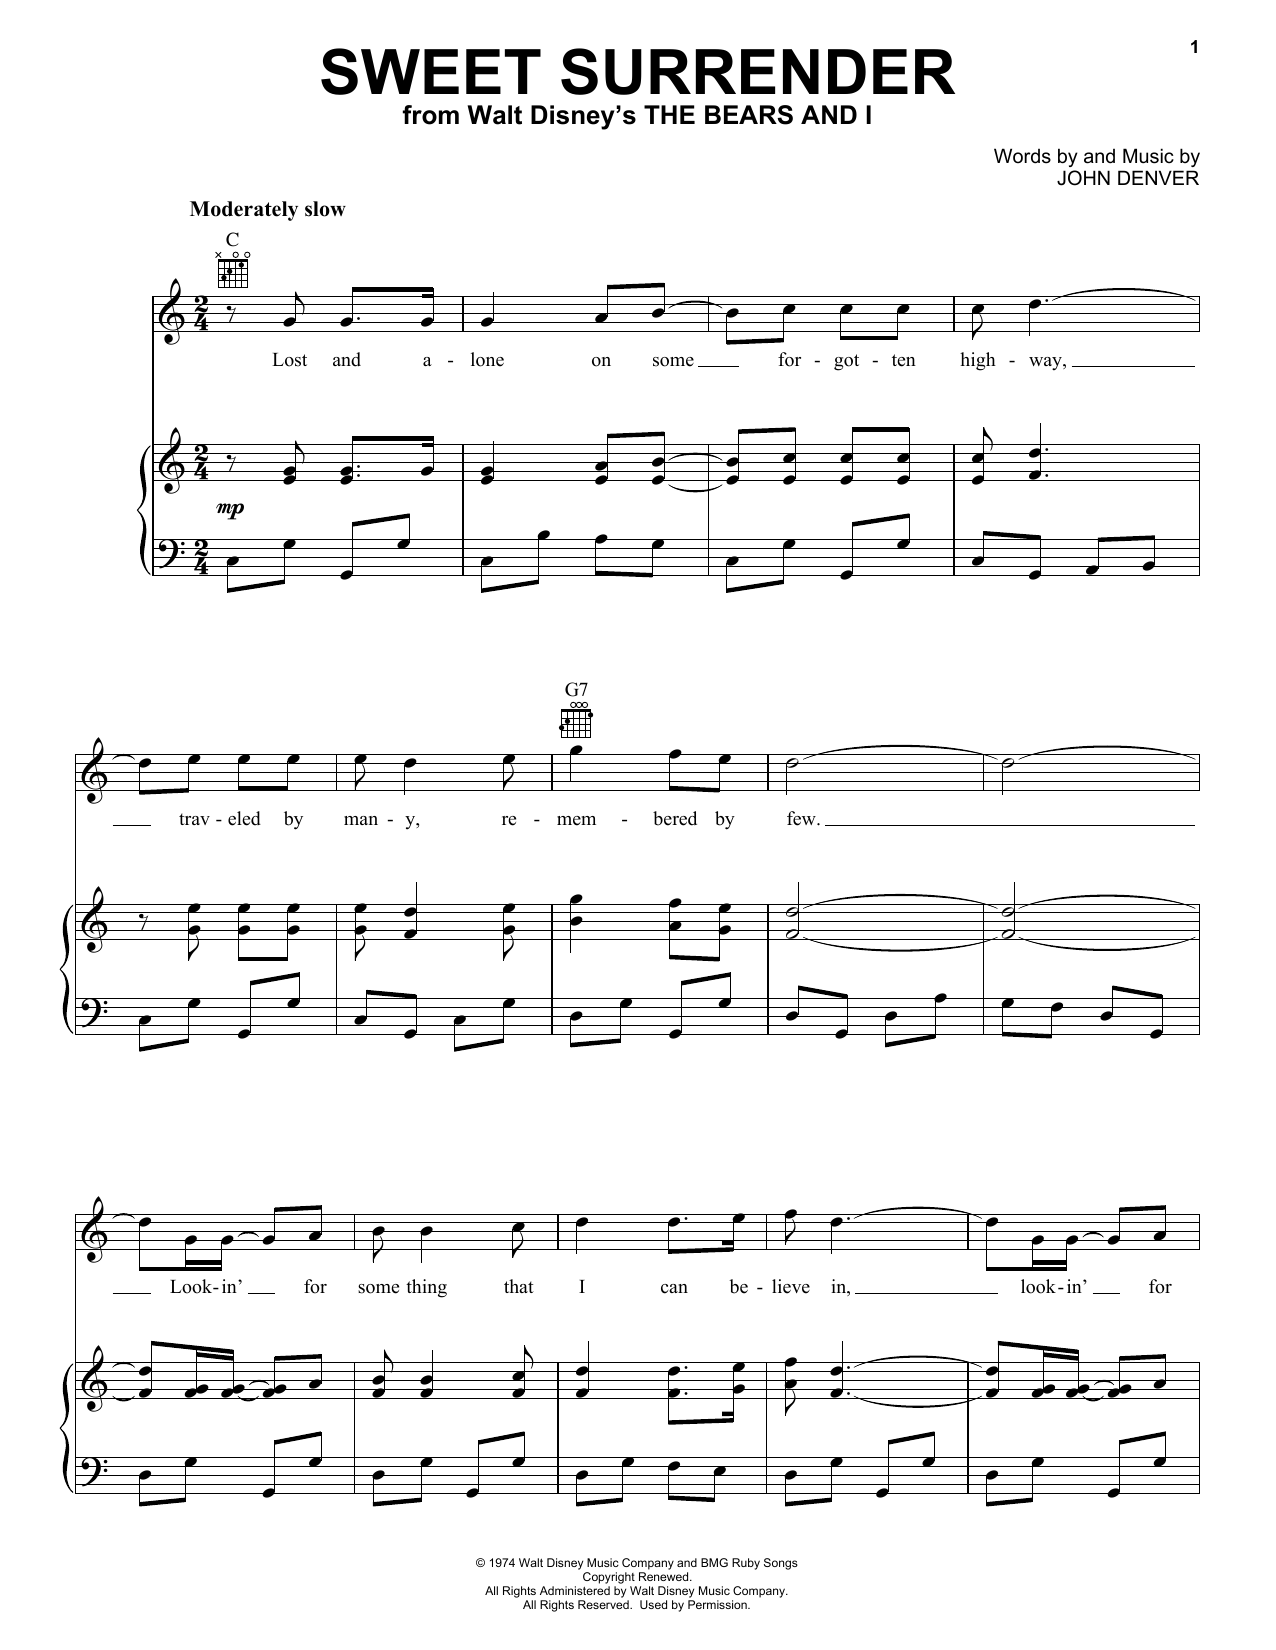 John Denver Sweet Surrender Sheet Music Notes & Chords for Alto Saxophone - Download or Print PDF